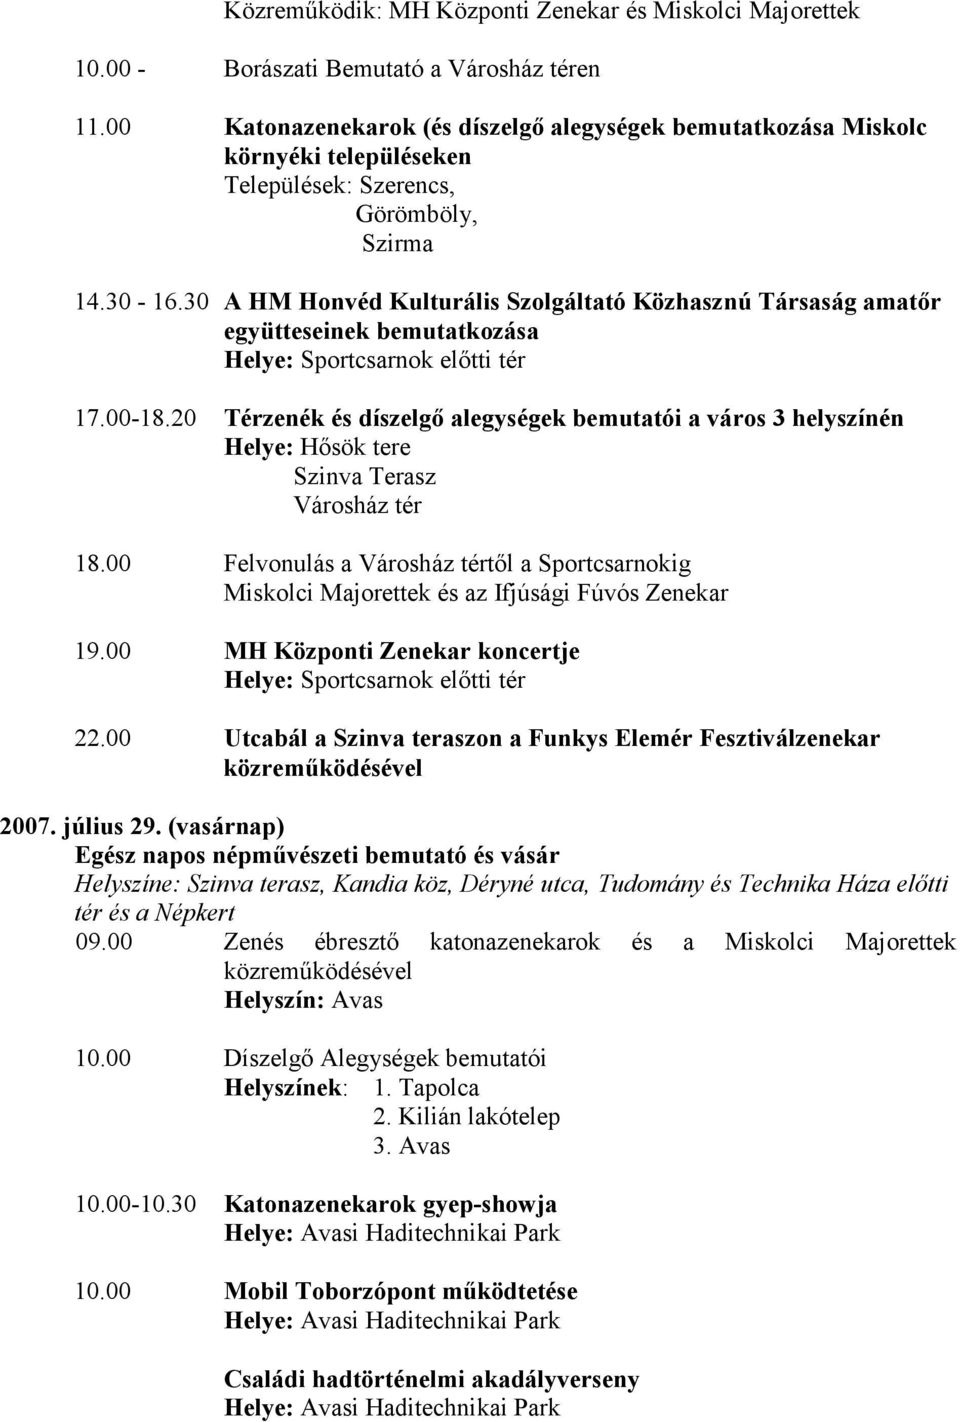 30 A HM Honvéd Kulturális Szolgáltató Közhasznú Társaság amatőr együtteseinek bemutatkozása 17.00-18.